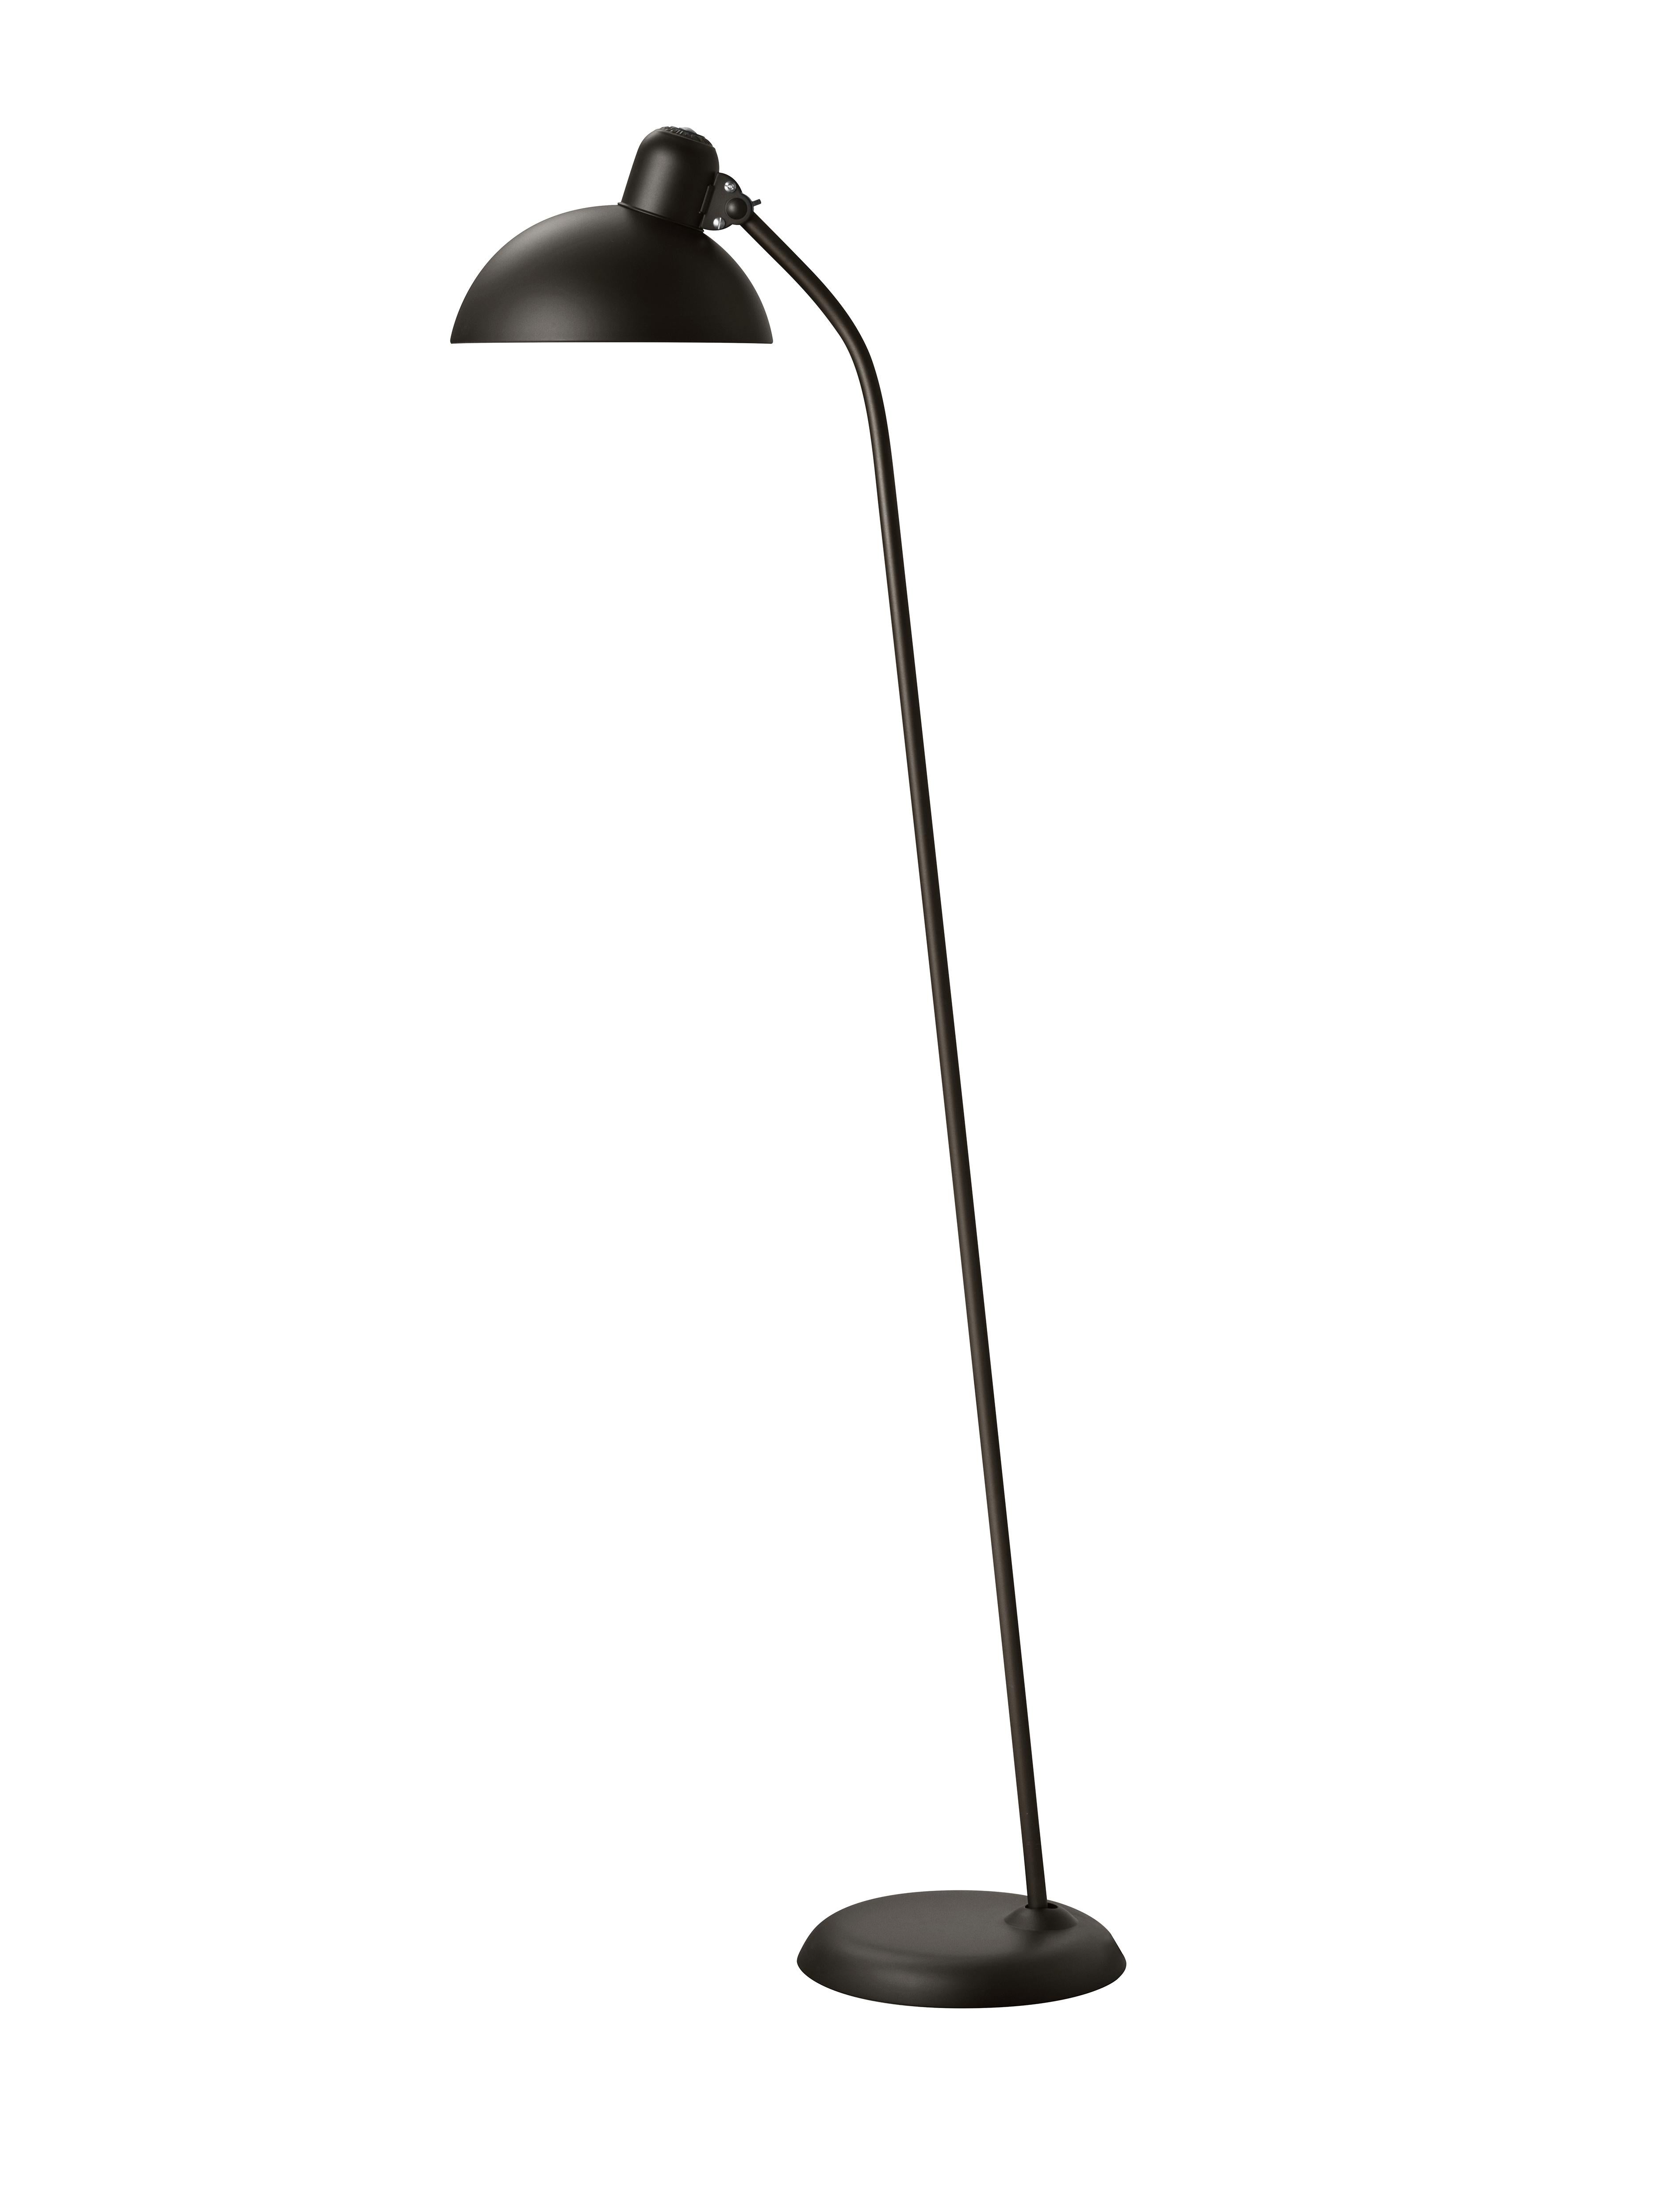 Christian Dell 'Kaiser Idell 6556-F' Floor Lamp for Fritz Hansen in Gloss Black For Sale 13